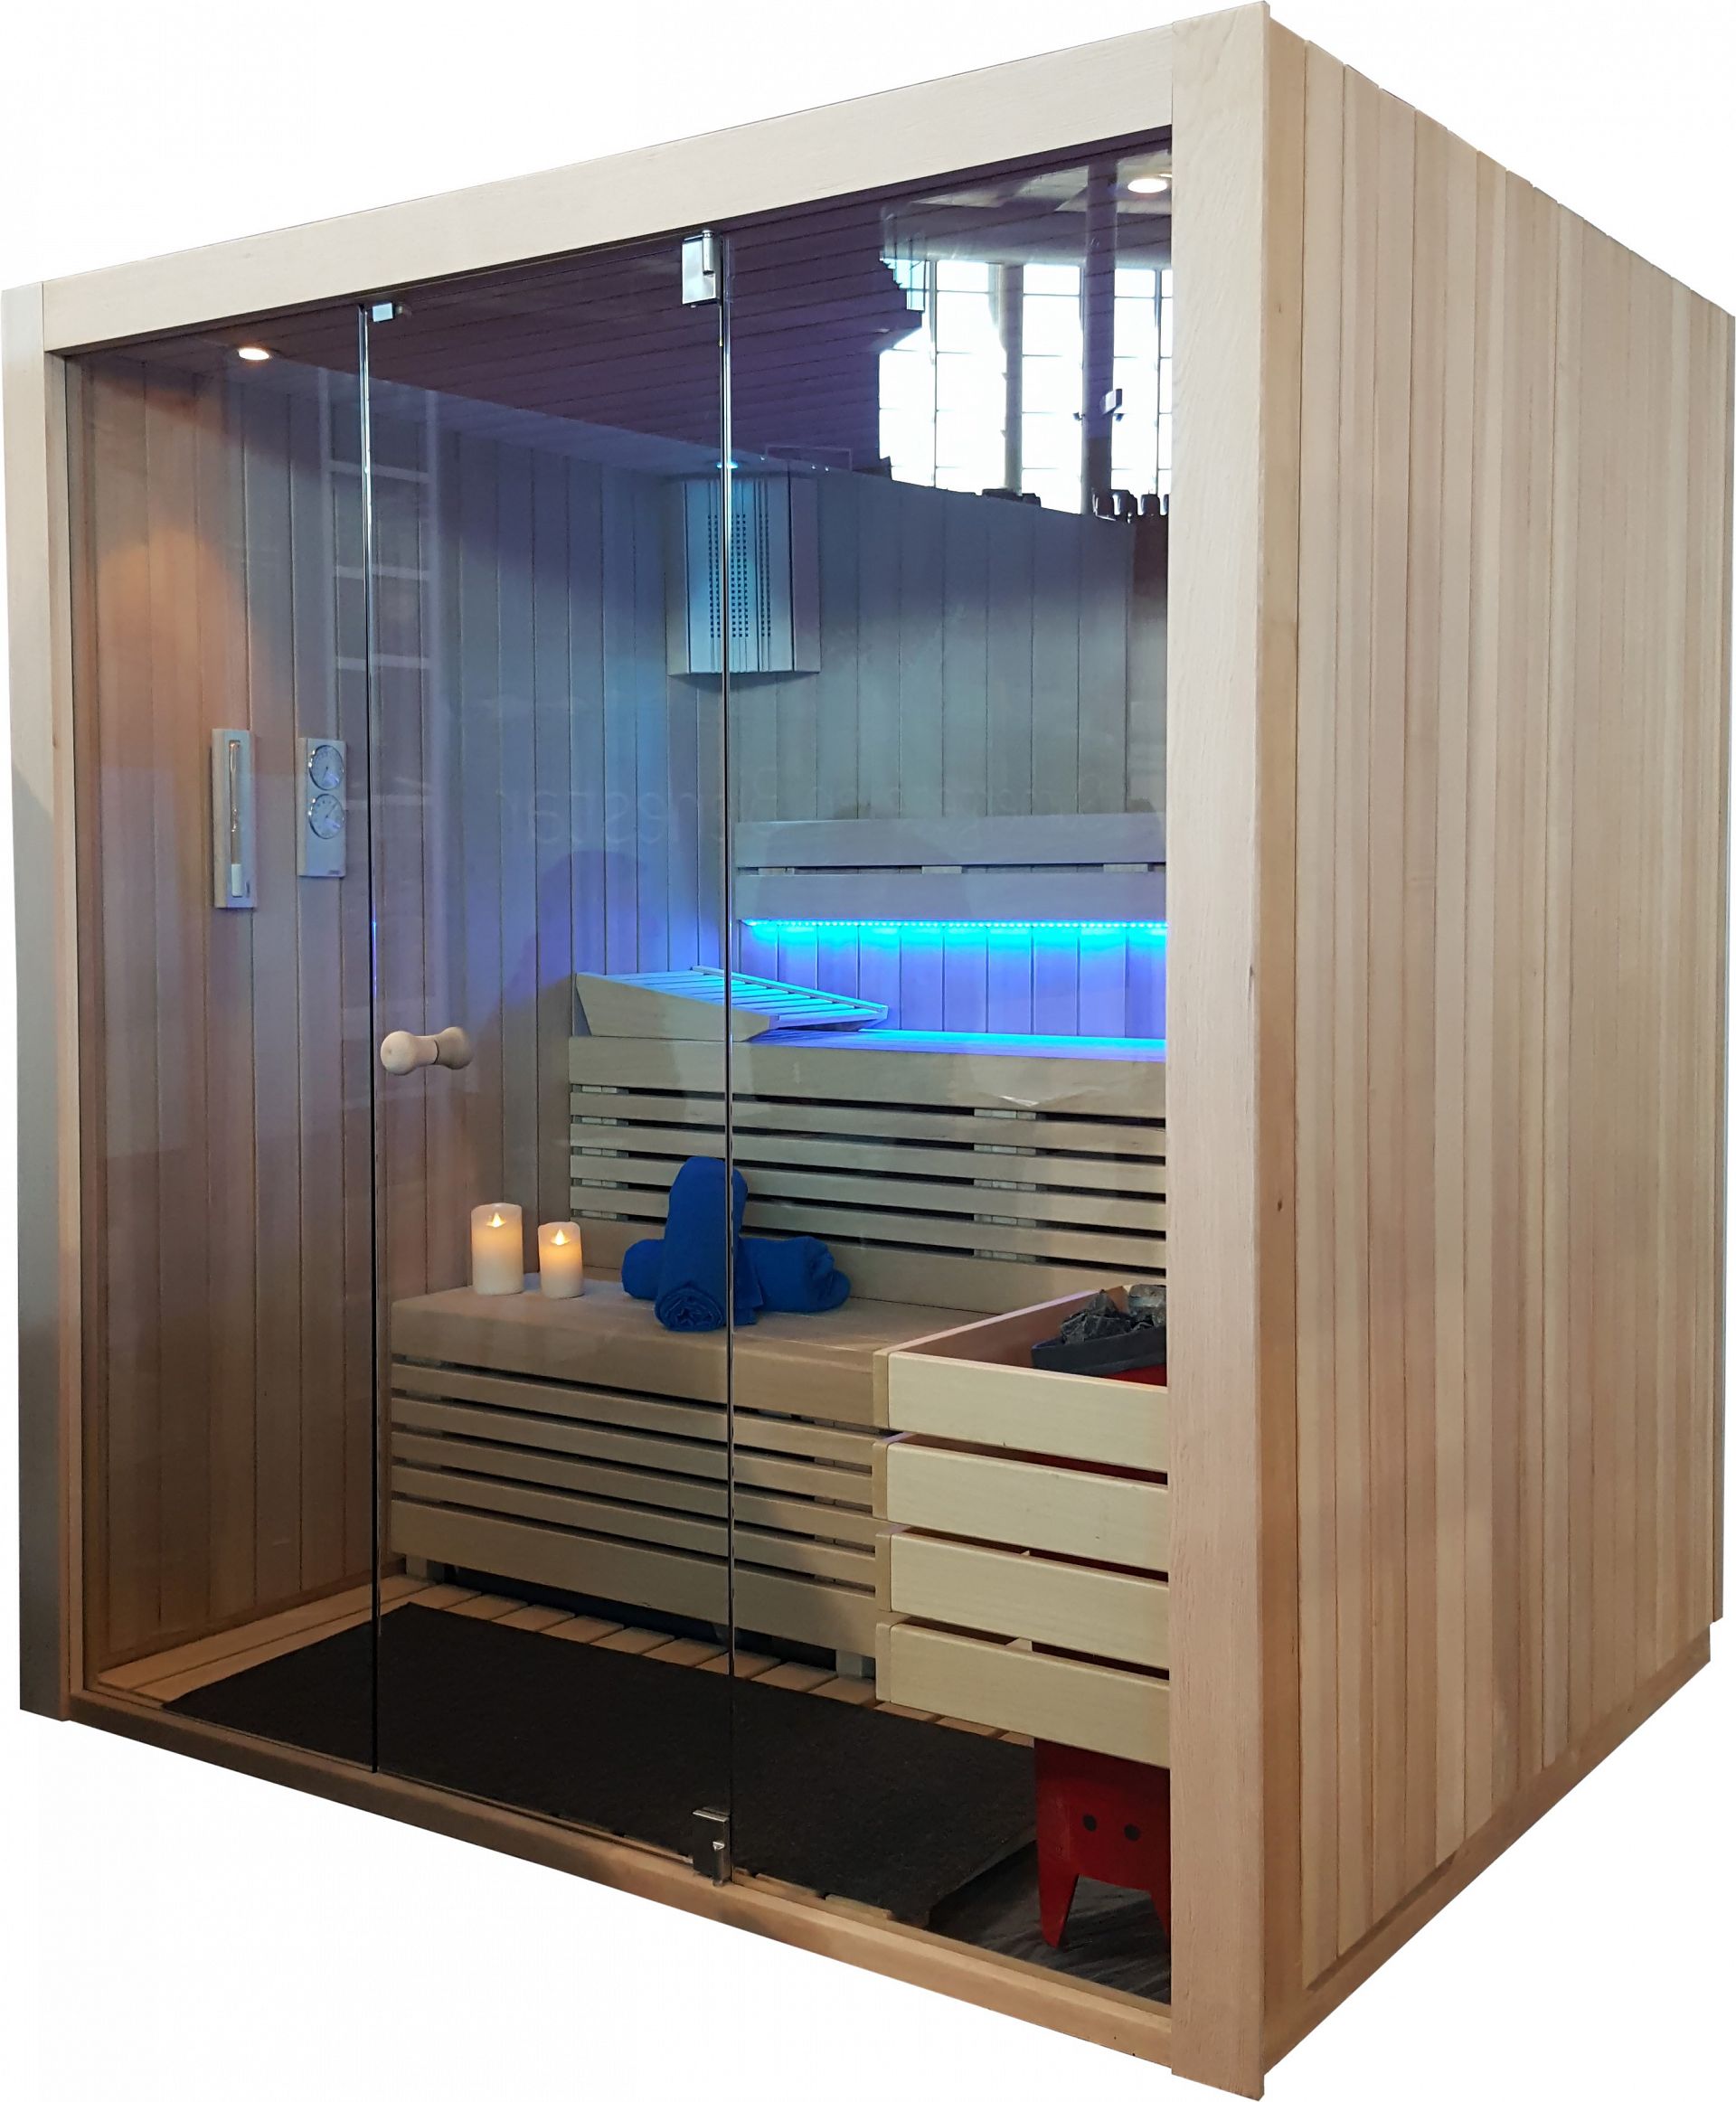 Te contamos el origen de las saunas: de Finlandia a Gispert